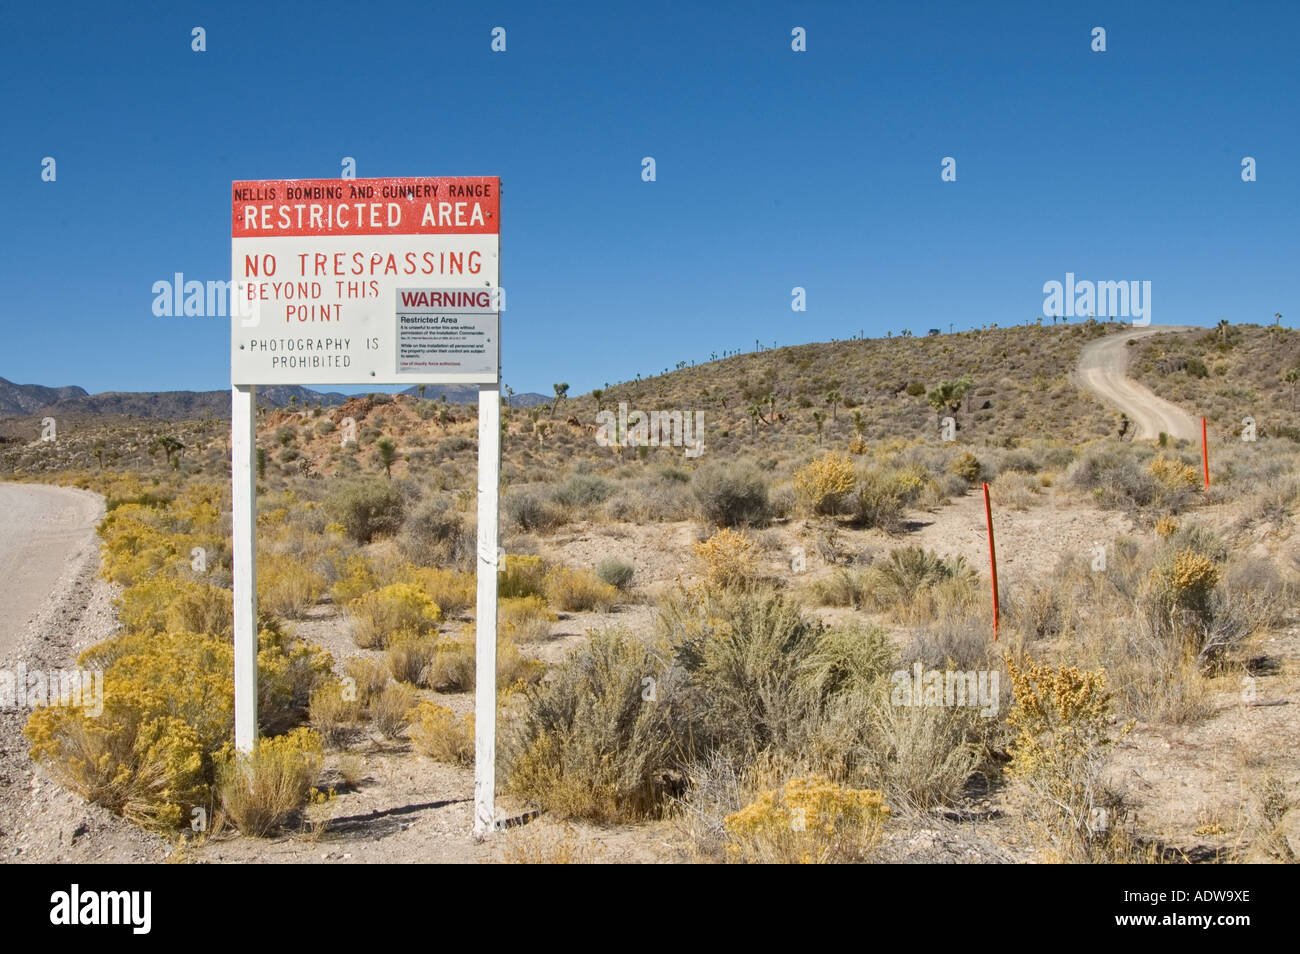 Nevada autostrada extraterrestre Groom Lake Road ingresso alla Nellis bombardamenti e Gamma Gunnery Area 51 senza sconfinamenti di segno Foto Stock